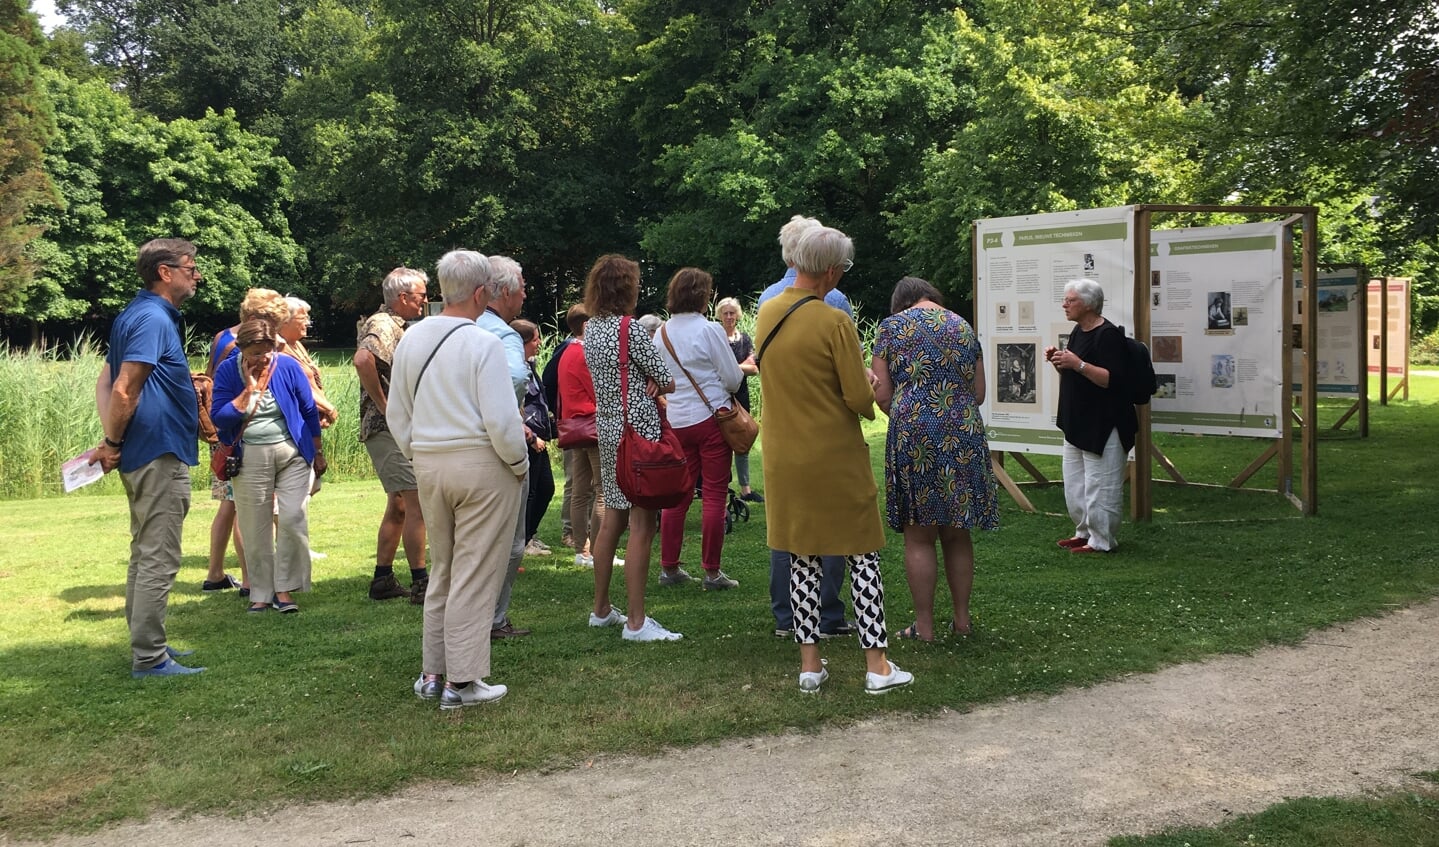 De rondleidingen worden gegeven door dorpsgidsen van de Stichting Historisch Beetsterzwaag.